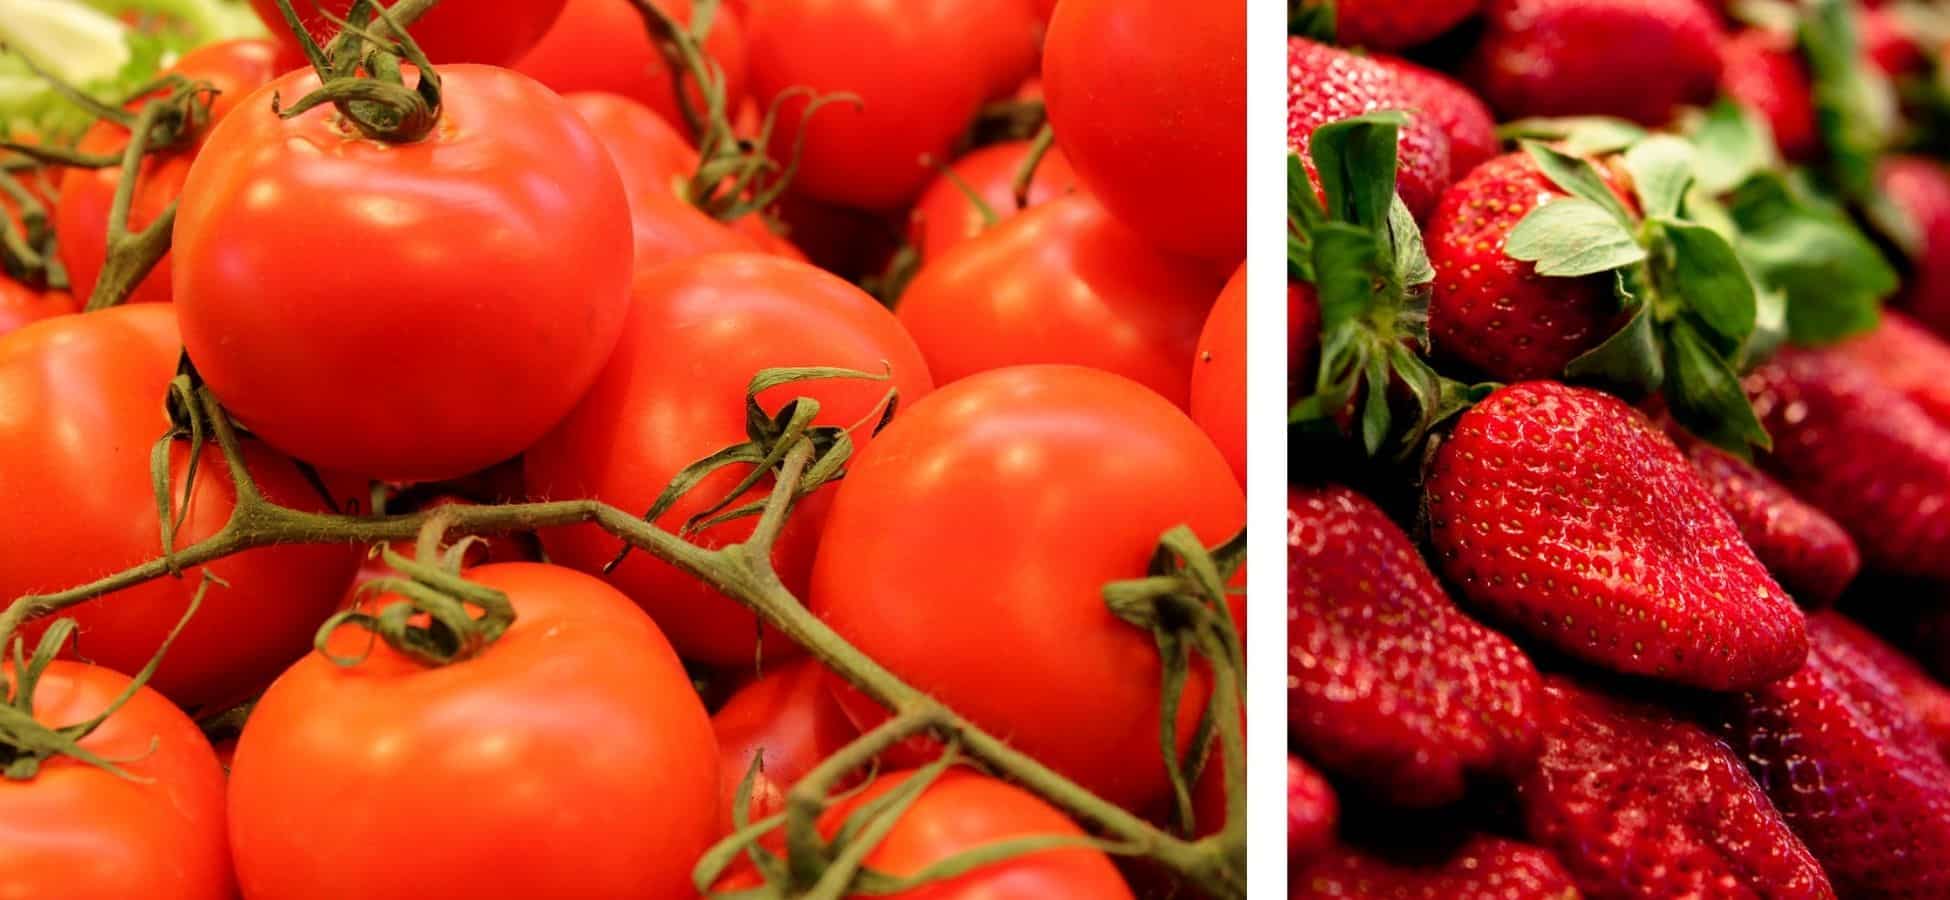 A gauche : des tomates |à droite : des fraises